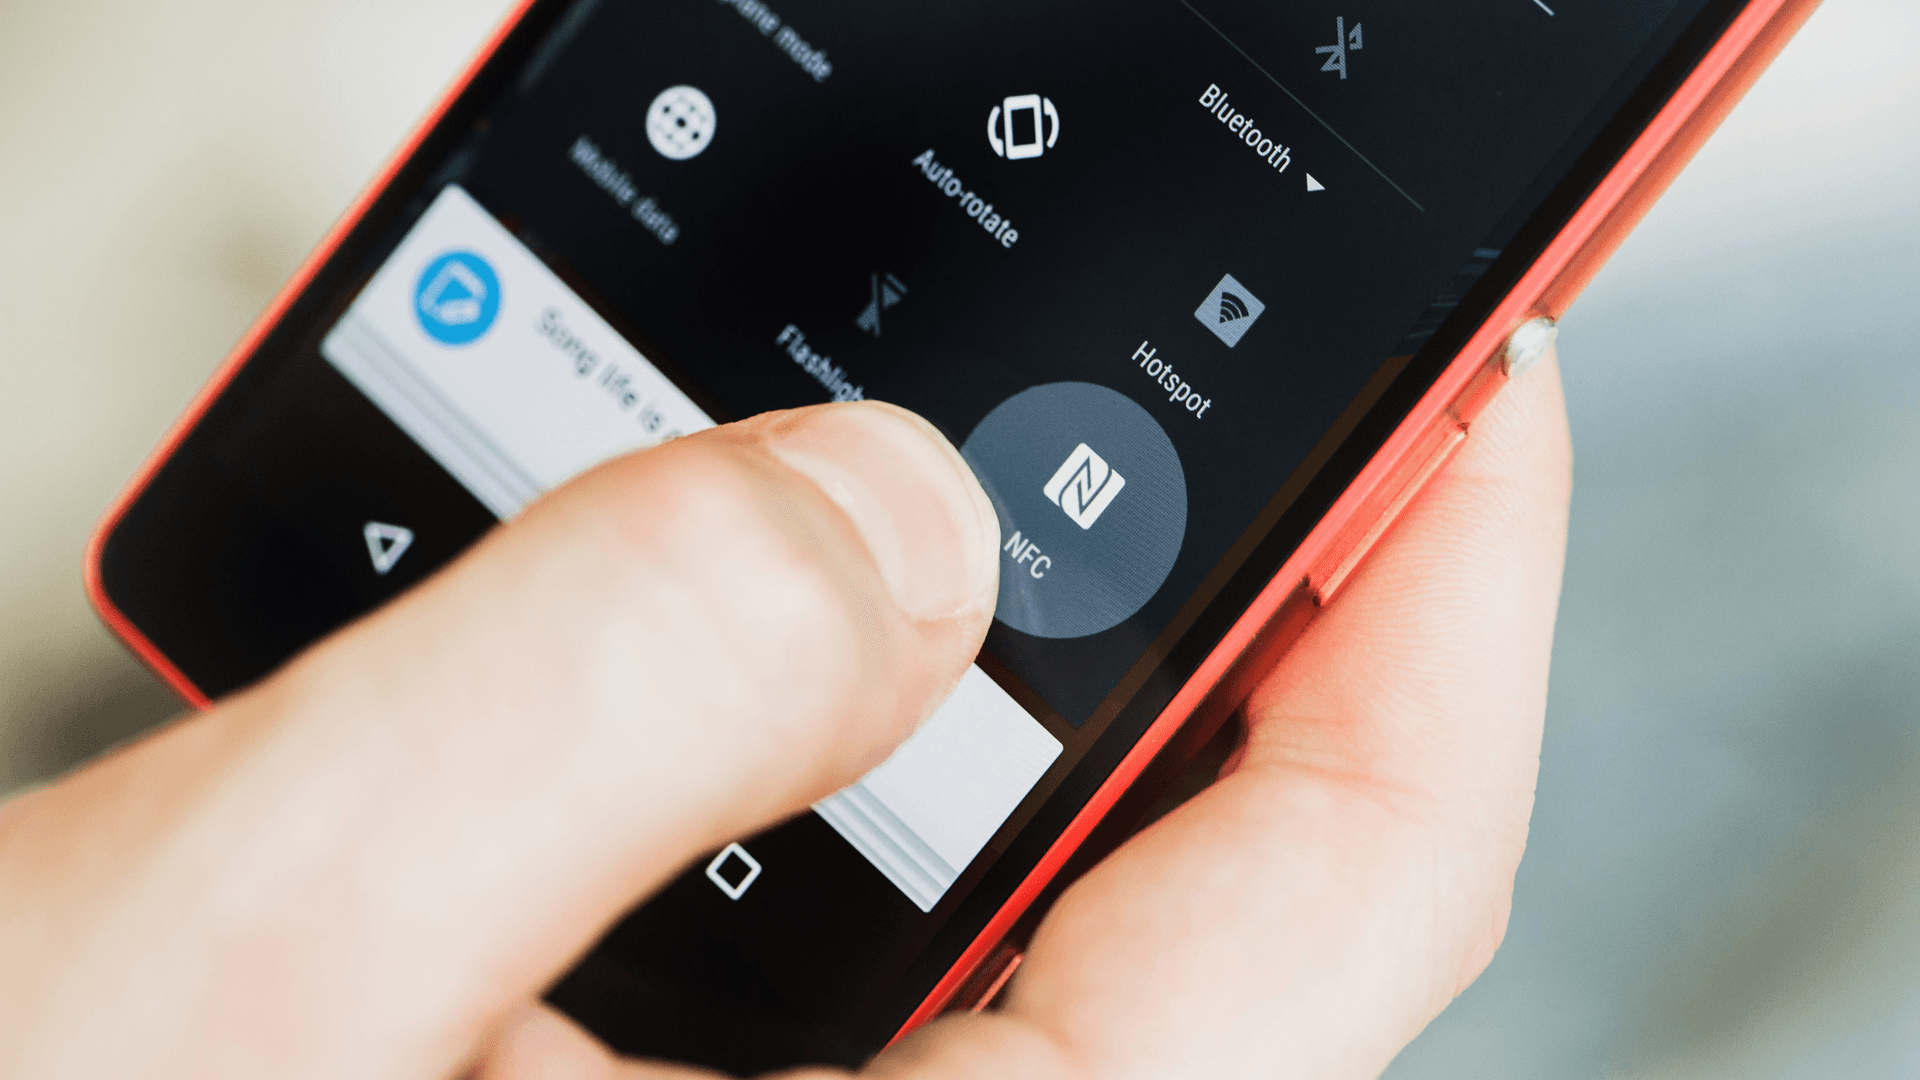 Abilita NFC sul tuo smartphone per avere un conto wallet digitale tipo Samsung Pay, o usa una carta di pagamento o carta prepagata 